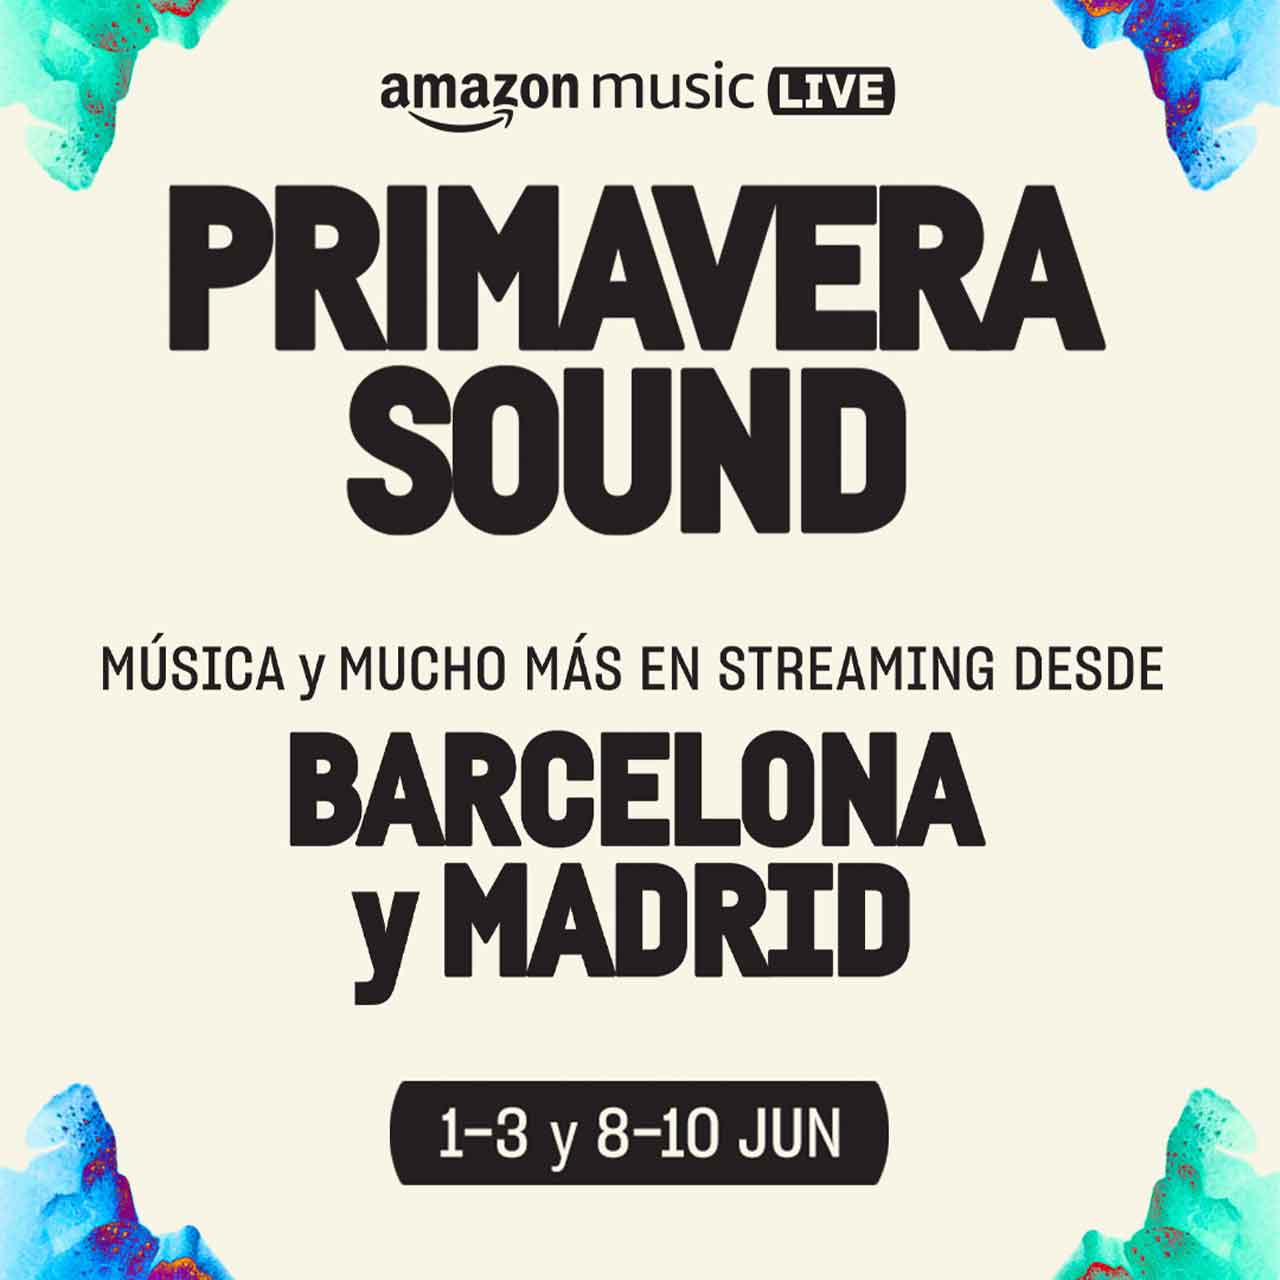 Amazon Music anuncia el Livestream en exclusiva del Primavera Sound